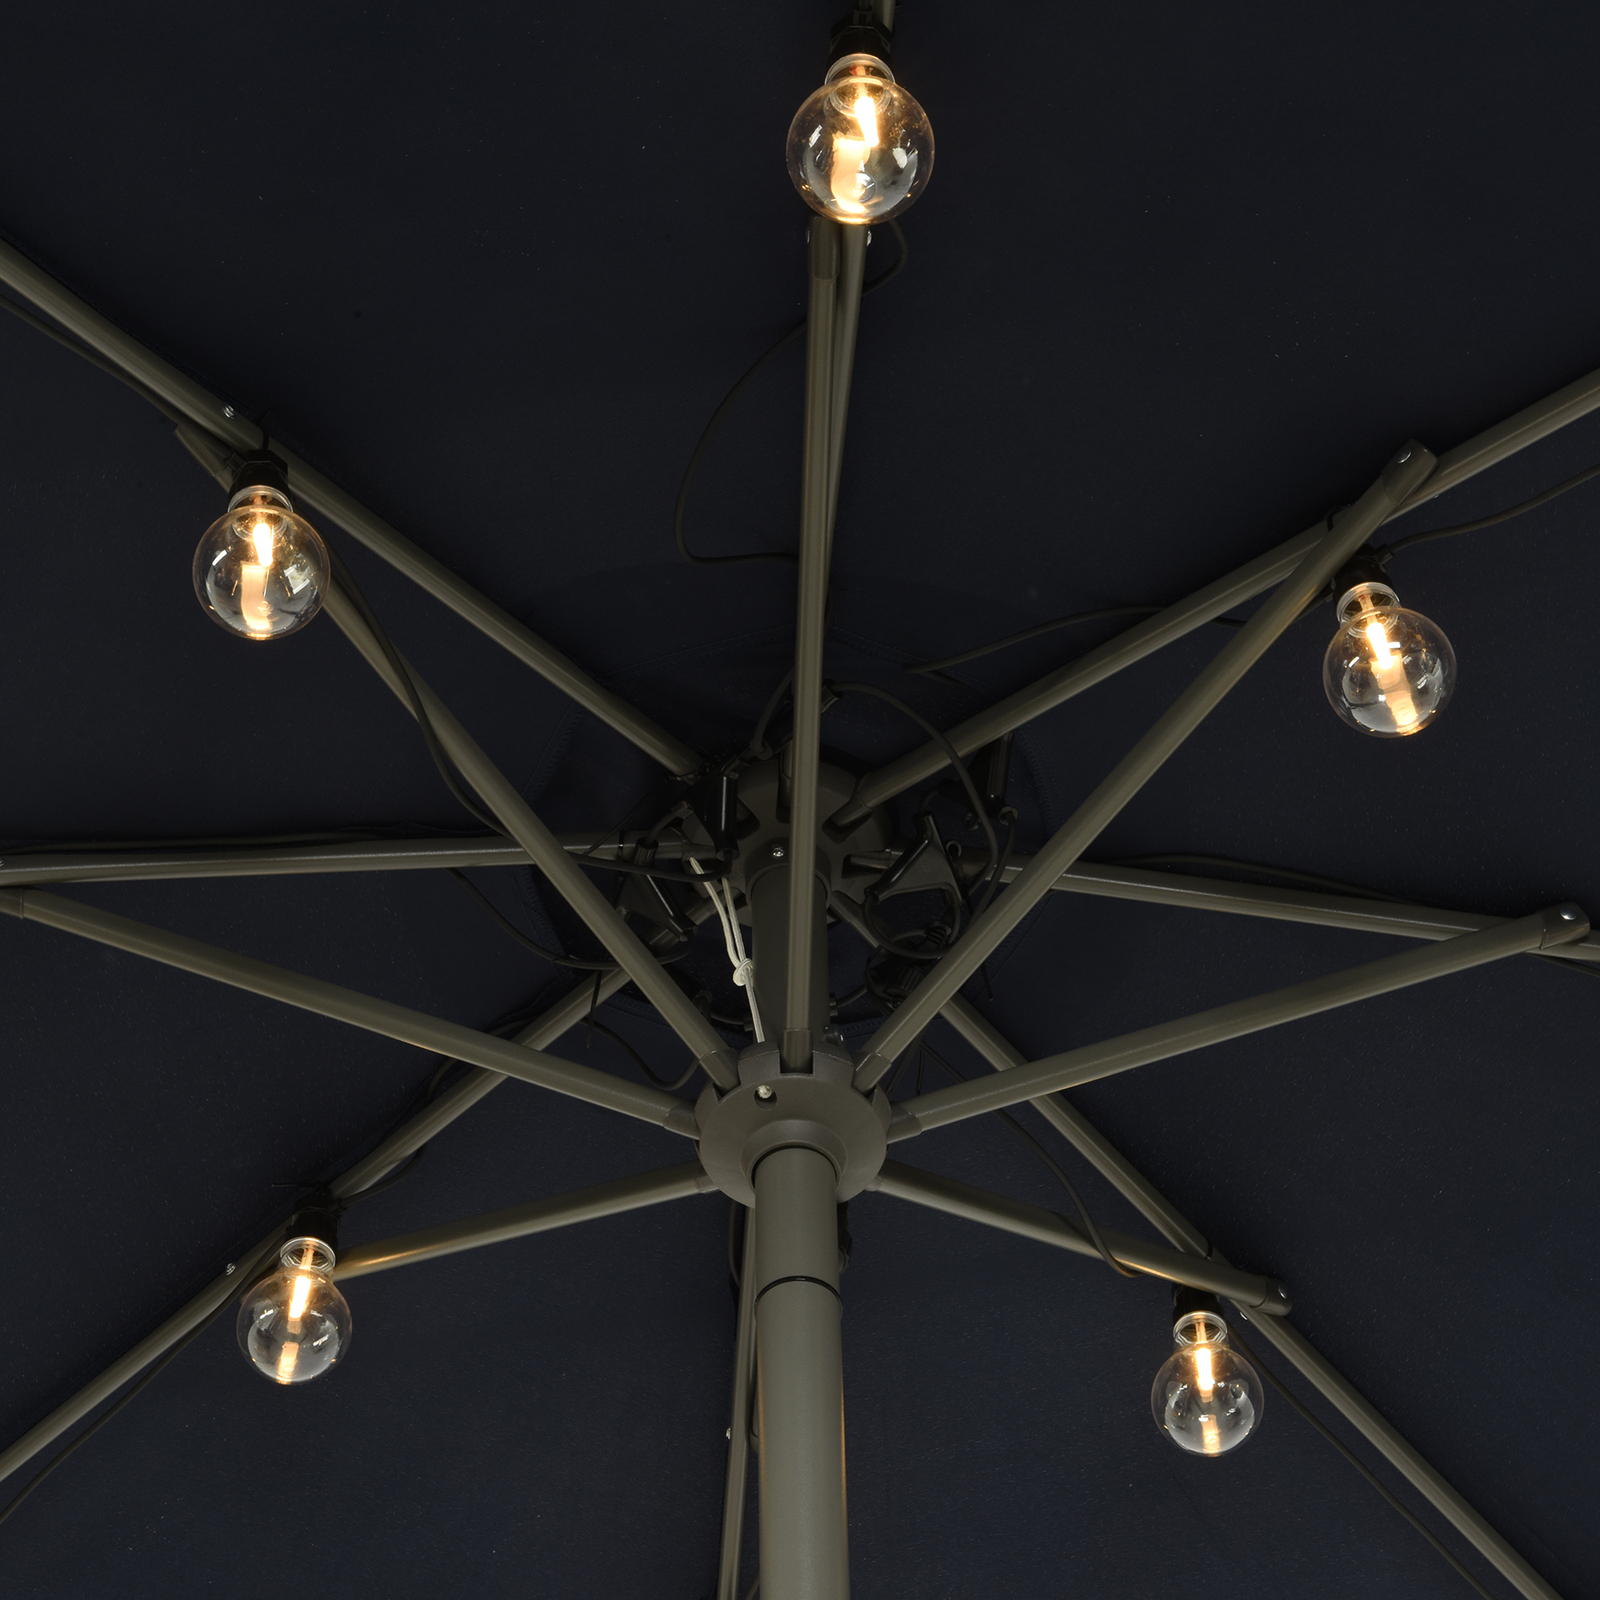 490145 LED string lights for parasols filament